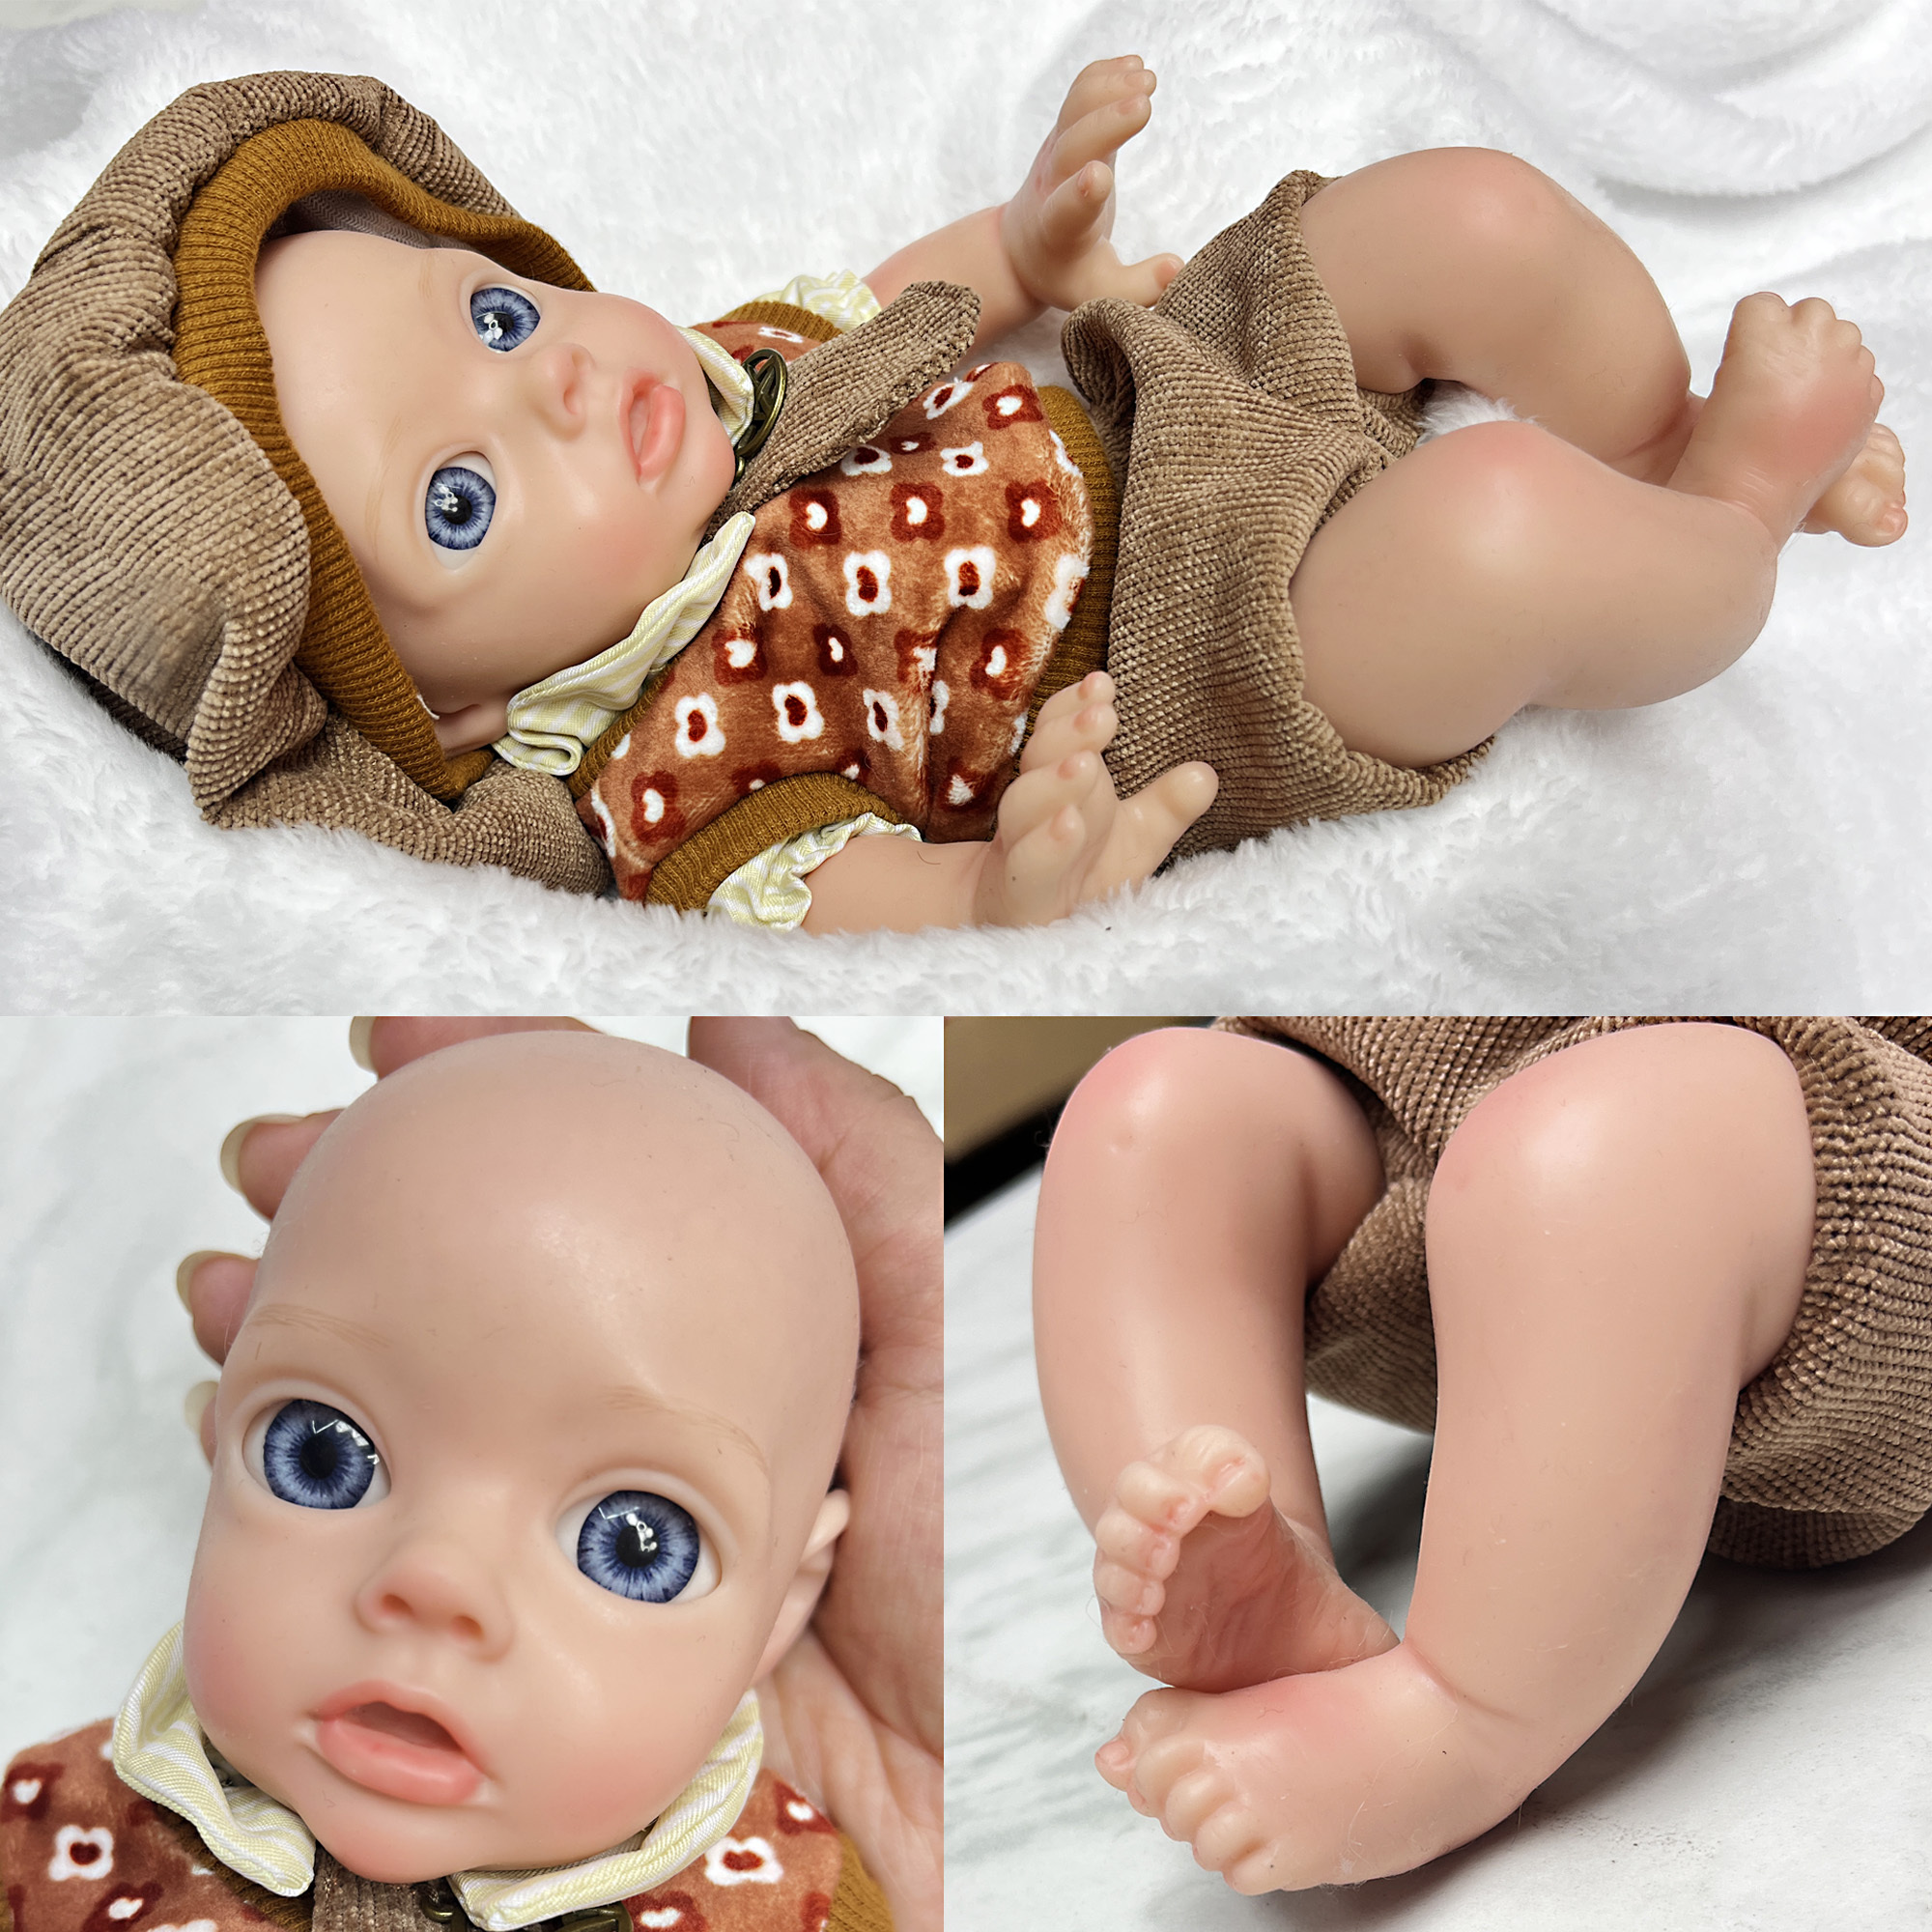 Boy Full Body Soft Solid Silicone Bebe Reborn Dolls Handmade